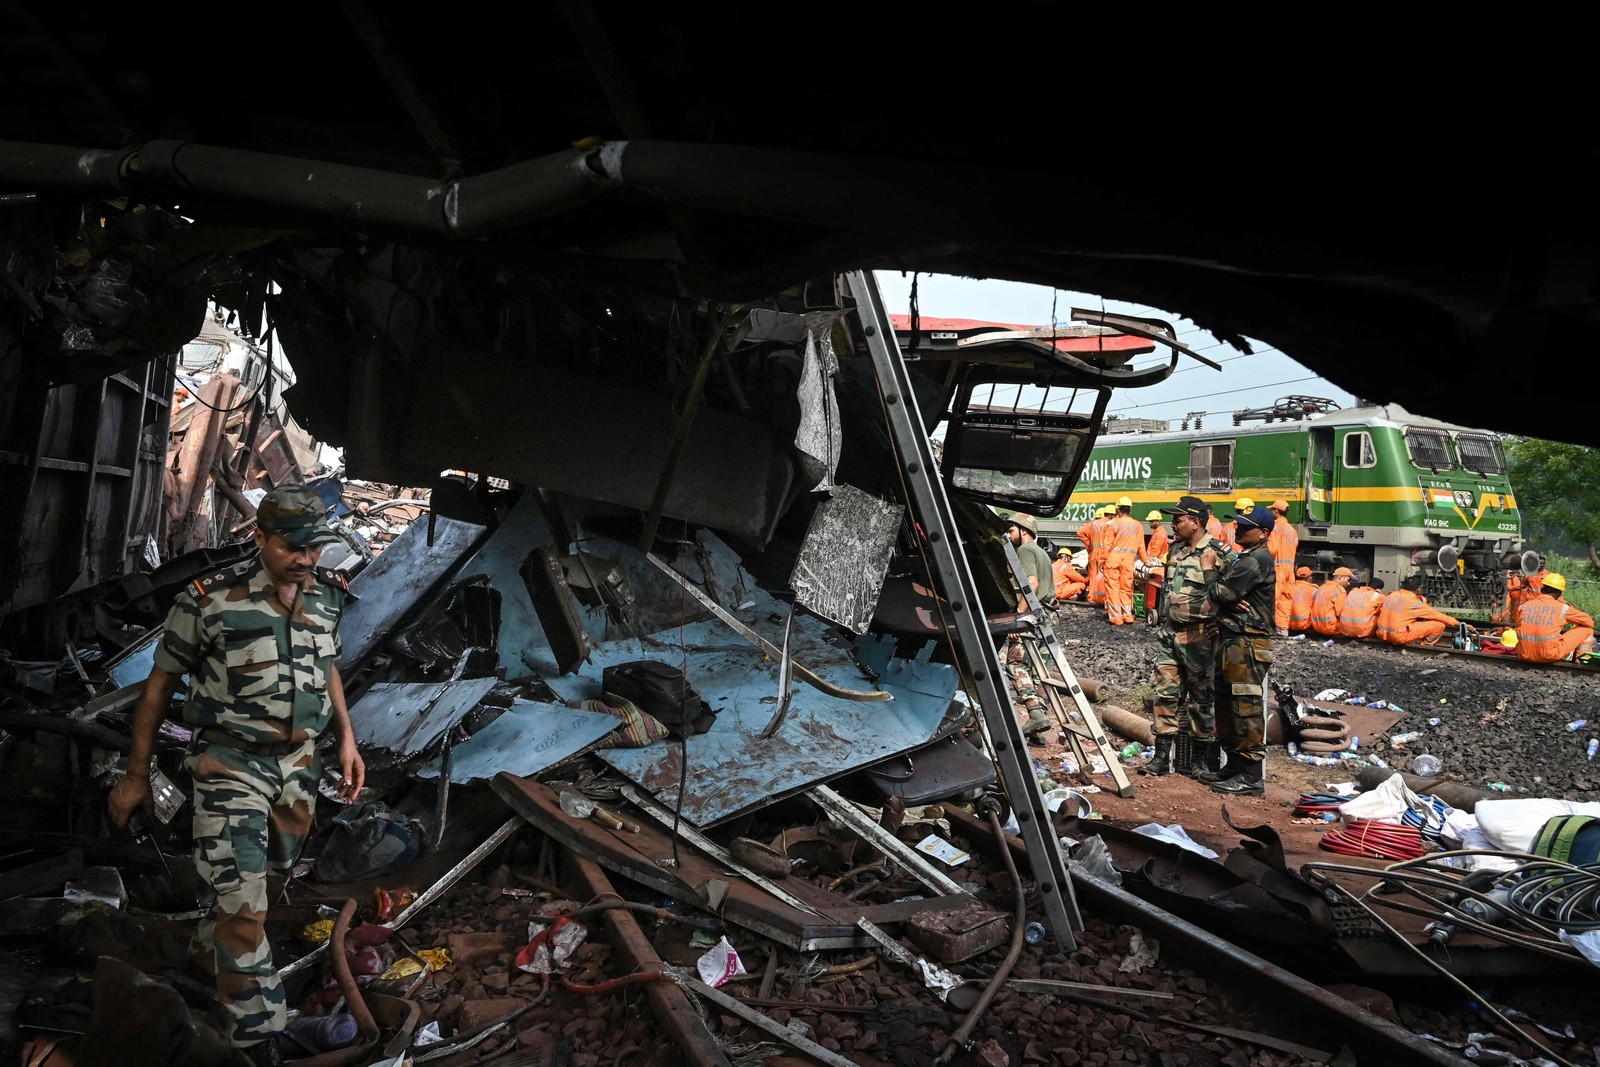 Militares inspecionam os destroços no local da colisão de trens perto de Balasore, a cerca de 200 km da capital do estado, Bhubaneswar, no estado oriental de Odisha — Foto: Dibyangshu SARKAR / AFP